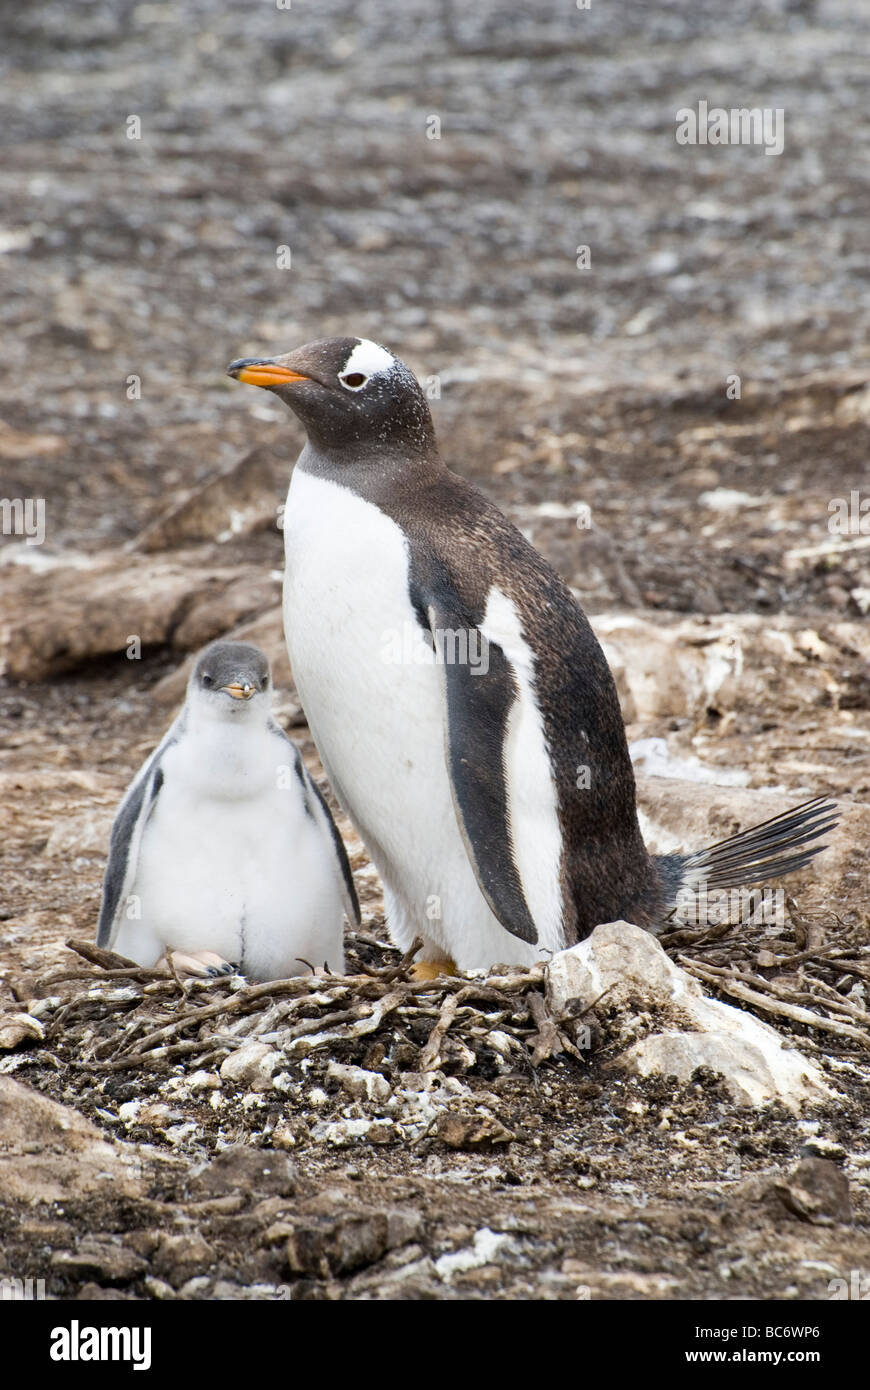 Gentoo pingouin, Pygoscelis papua - adulte assis sur un nid avec son poussin Banque D'Images